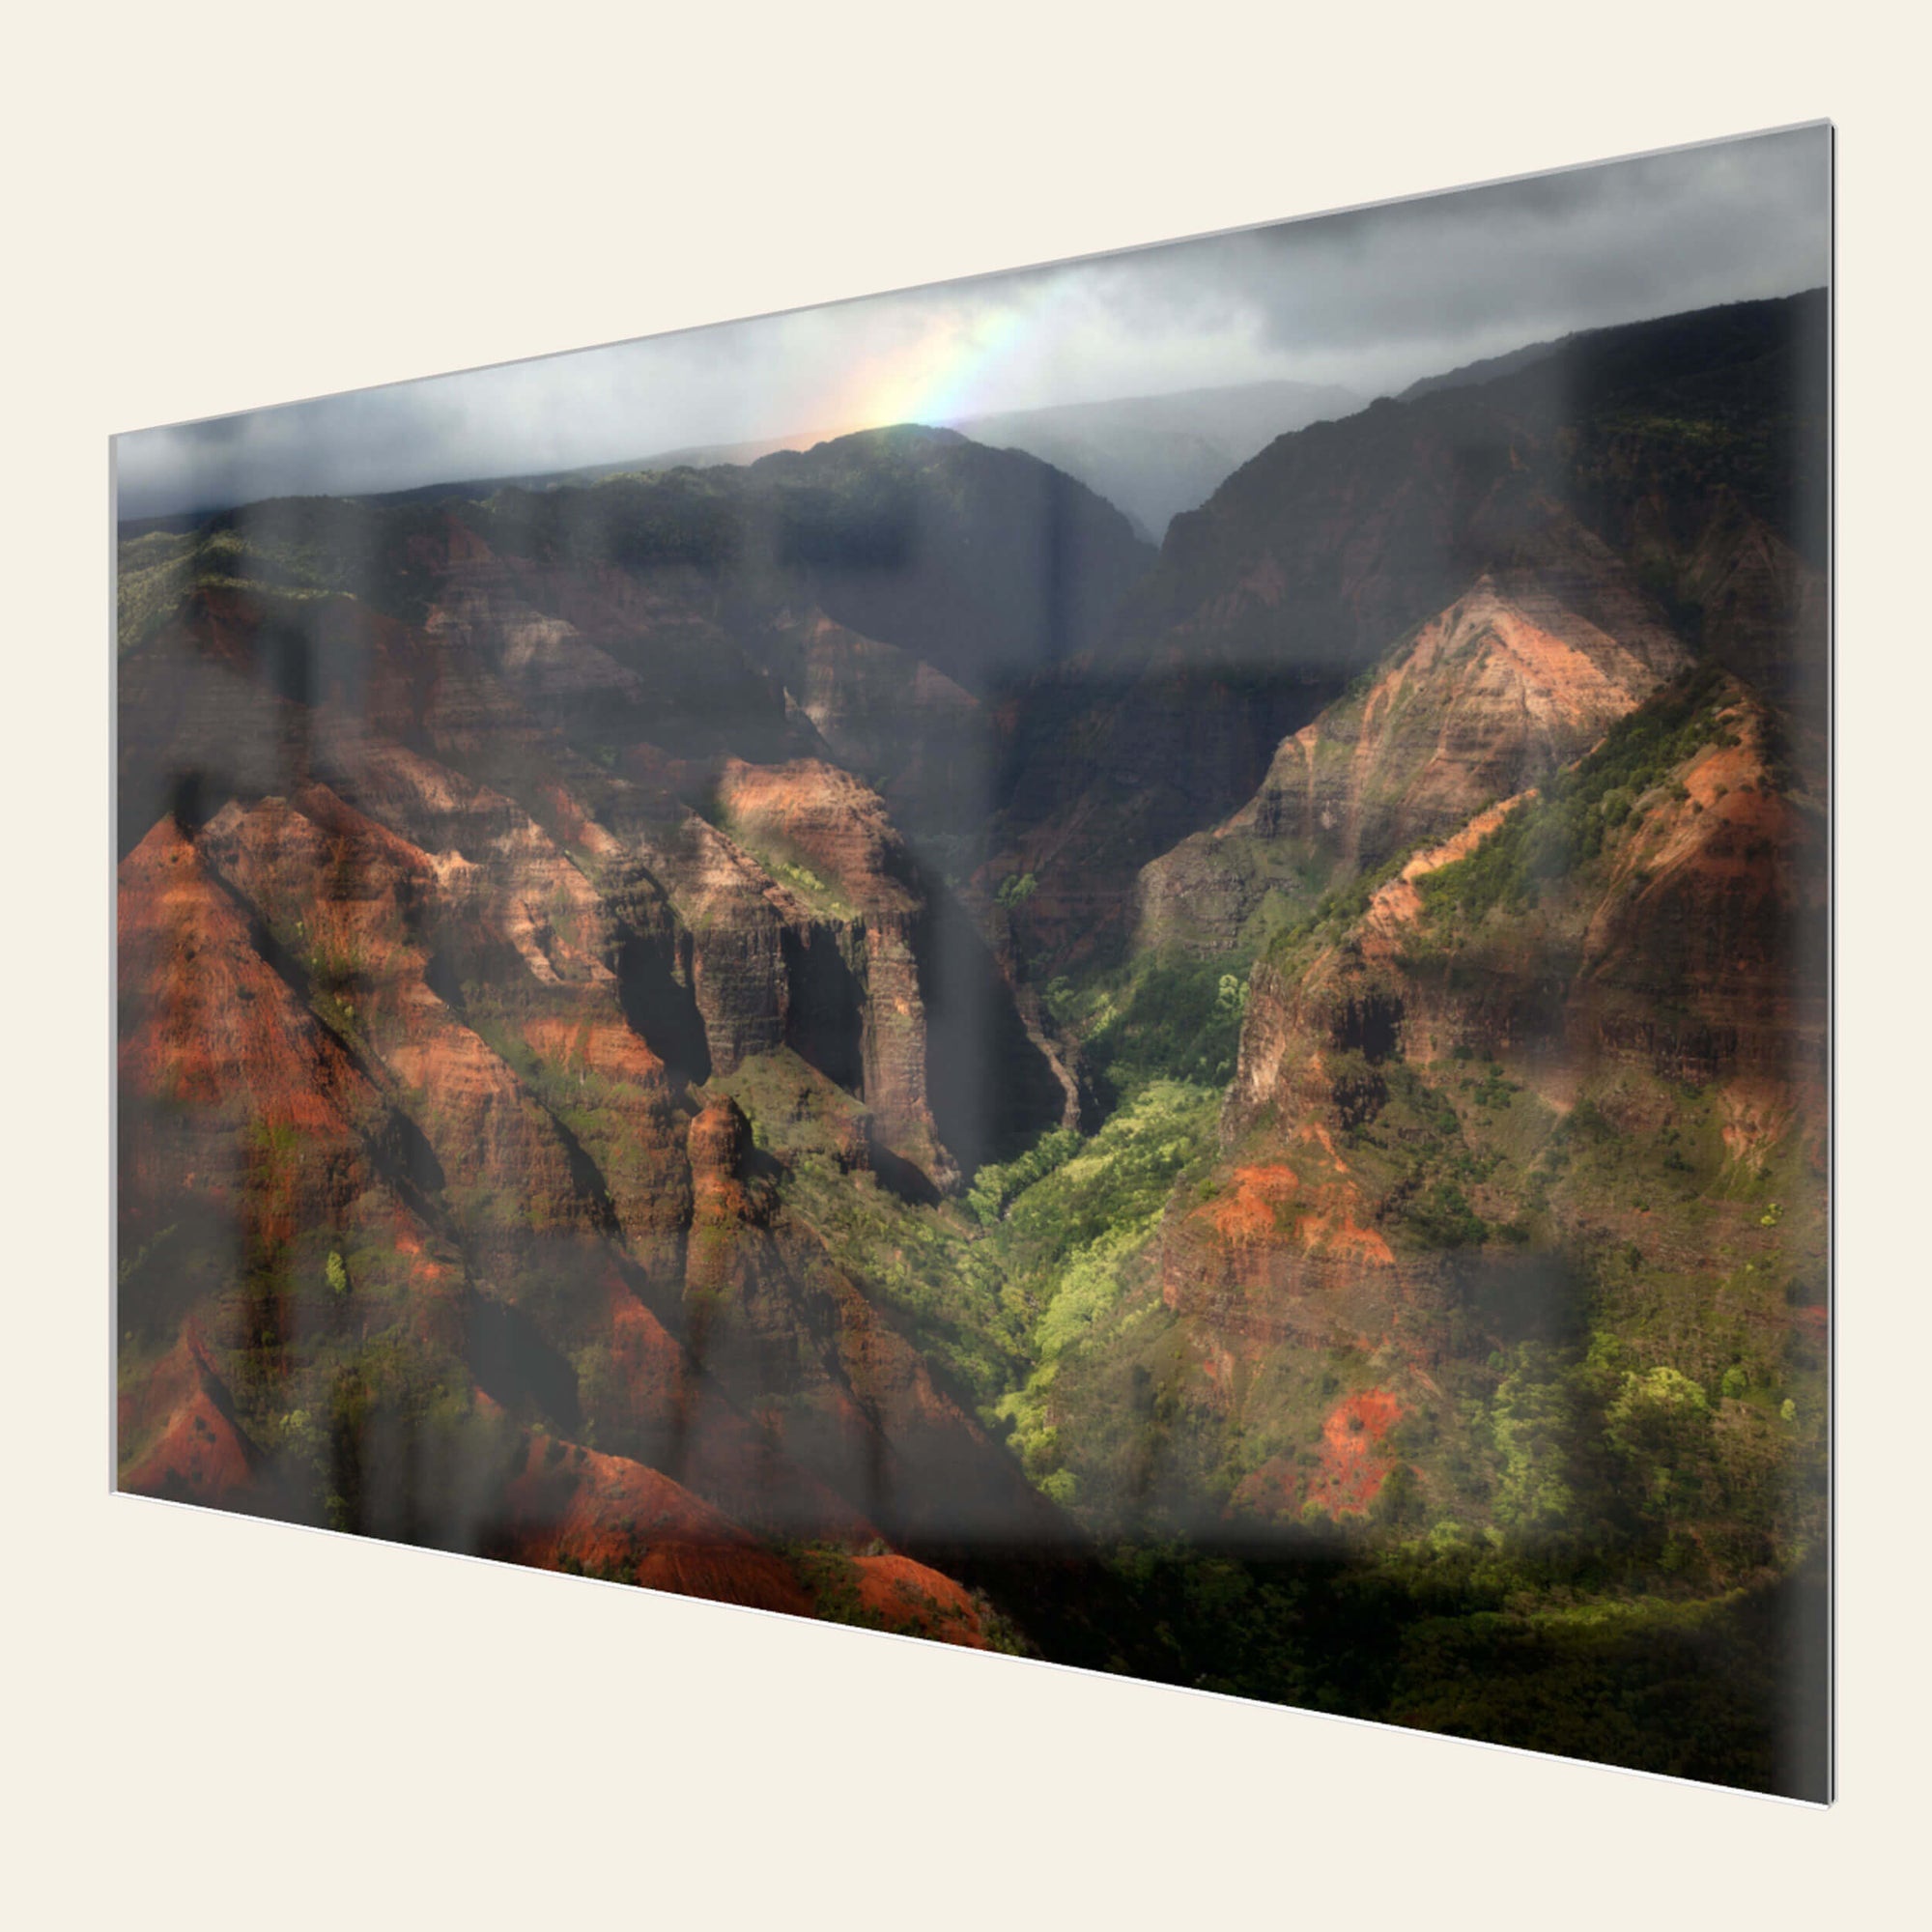 A TruLife acrylic picture of Waimea Canyon on Kauai with a rainbow.